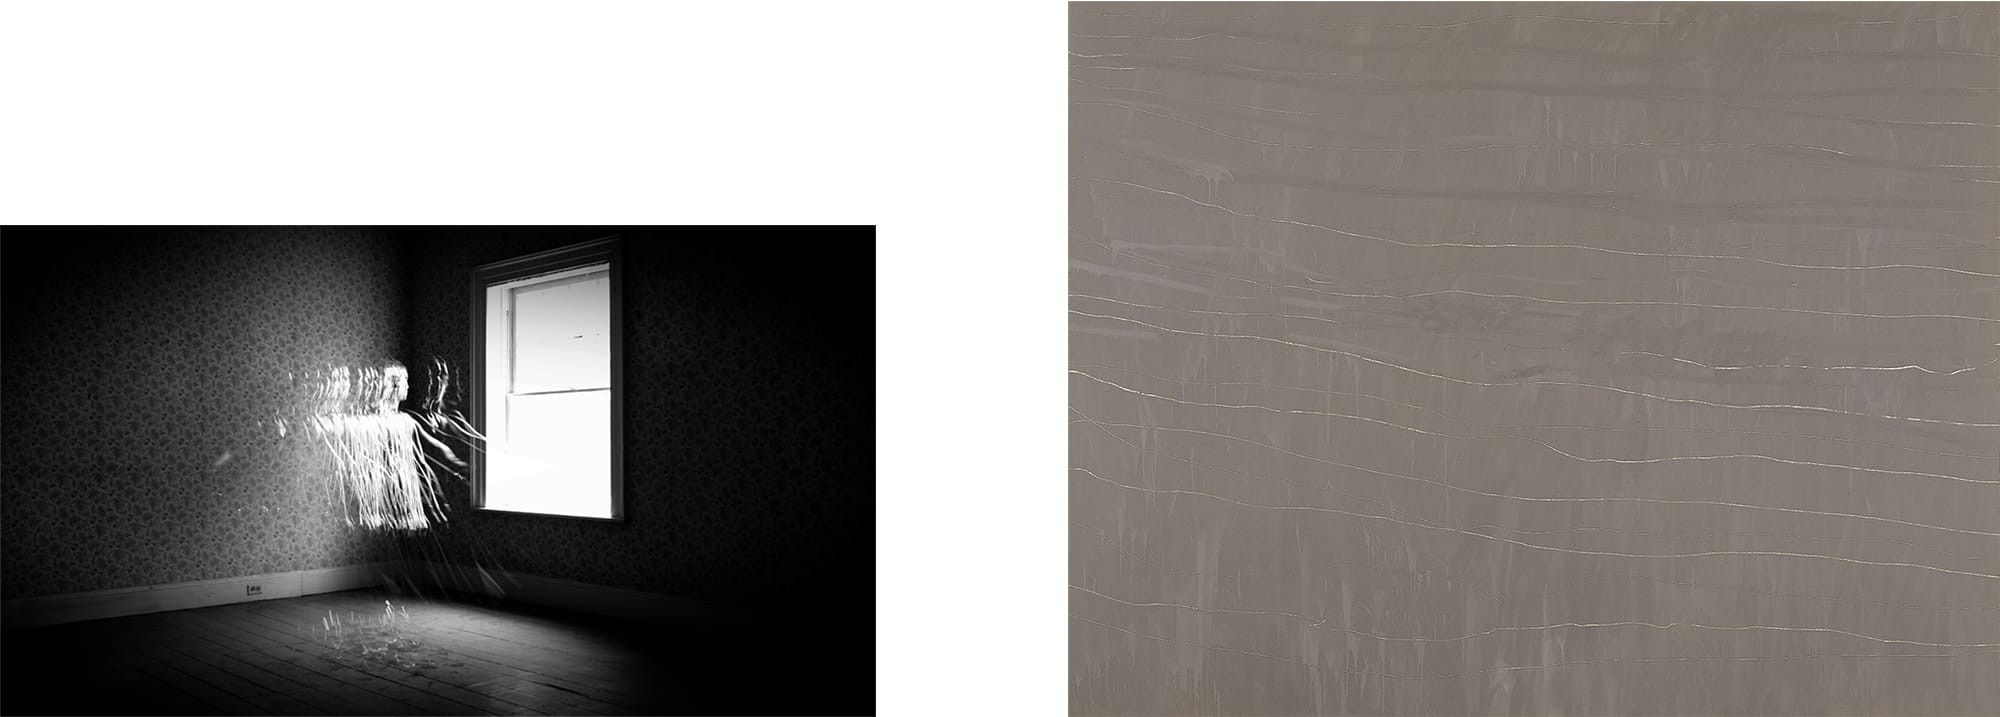 さわひらき(1977- ) × サイ・トゥオンブリー(1928-2011)の出会い左：さわひらき《Souvenir IV》2012年右：サイ・トゥオンブリー《無題》1968年　DIC川村記念美術館　© Cy Twombly Foundation